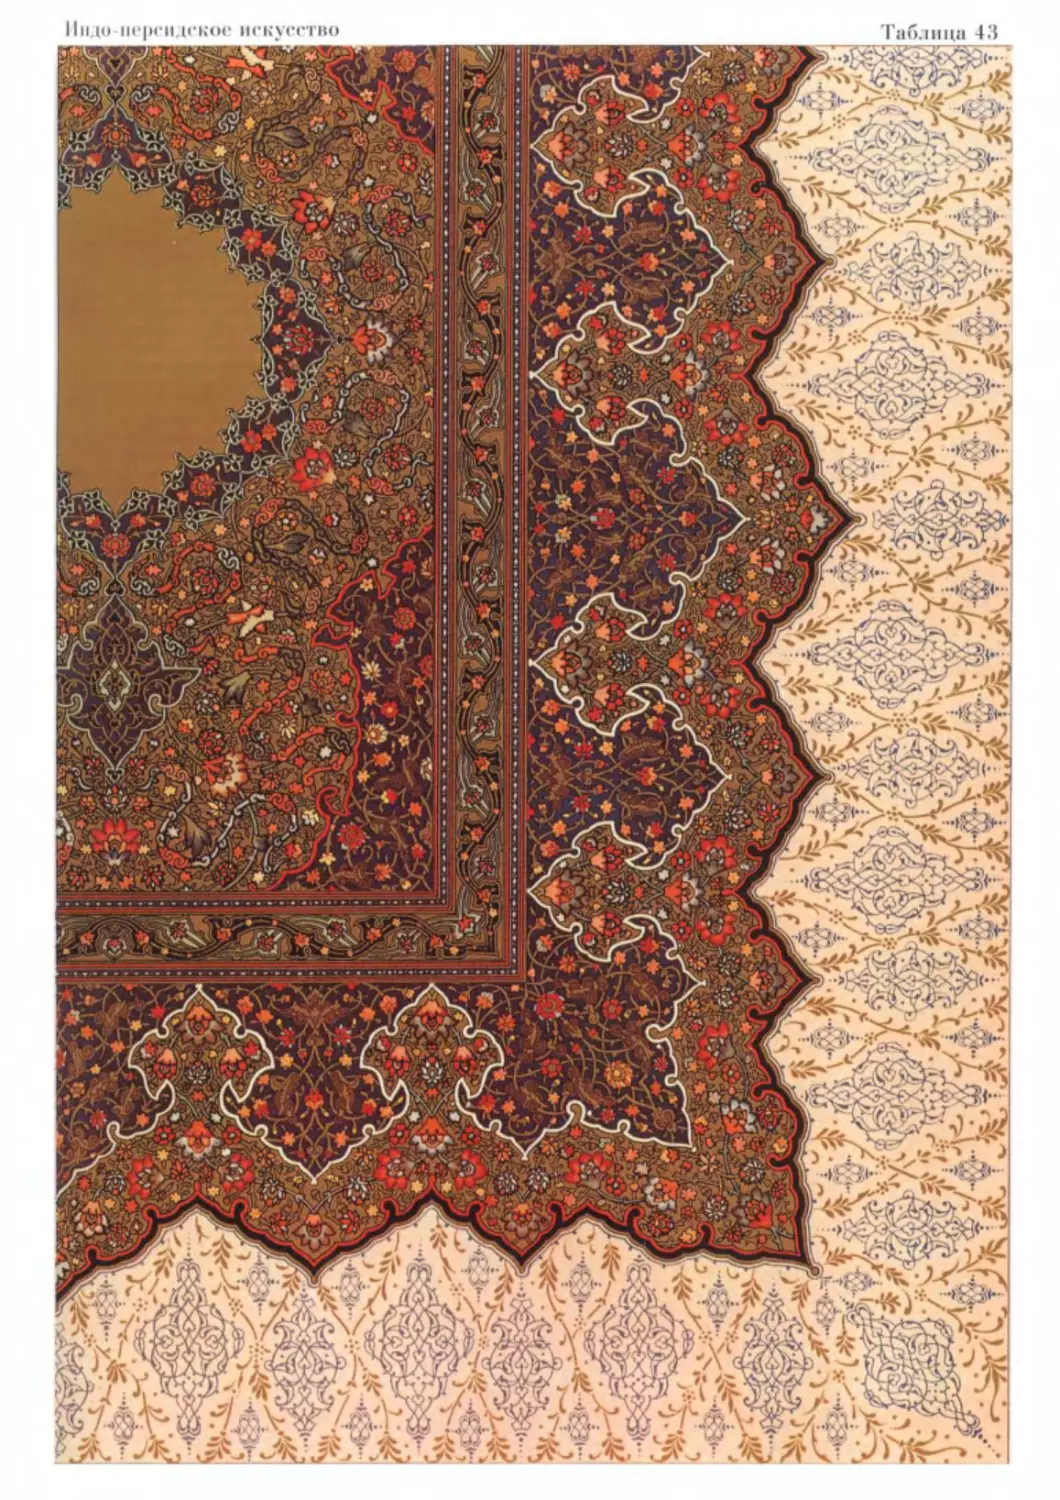 Индо-персидское искусство цвет